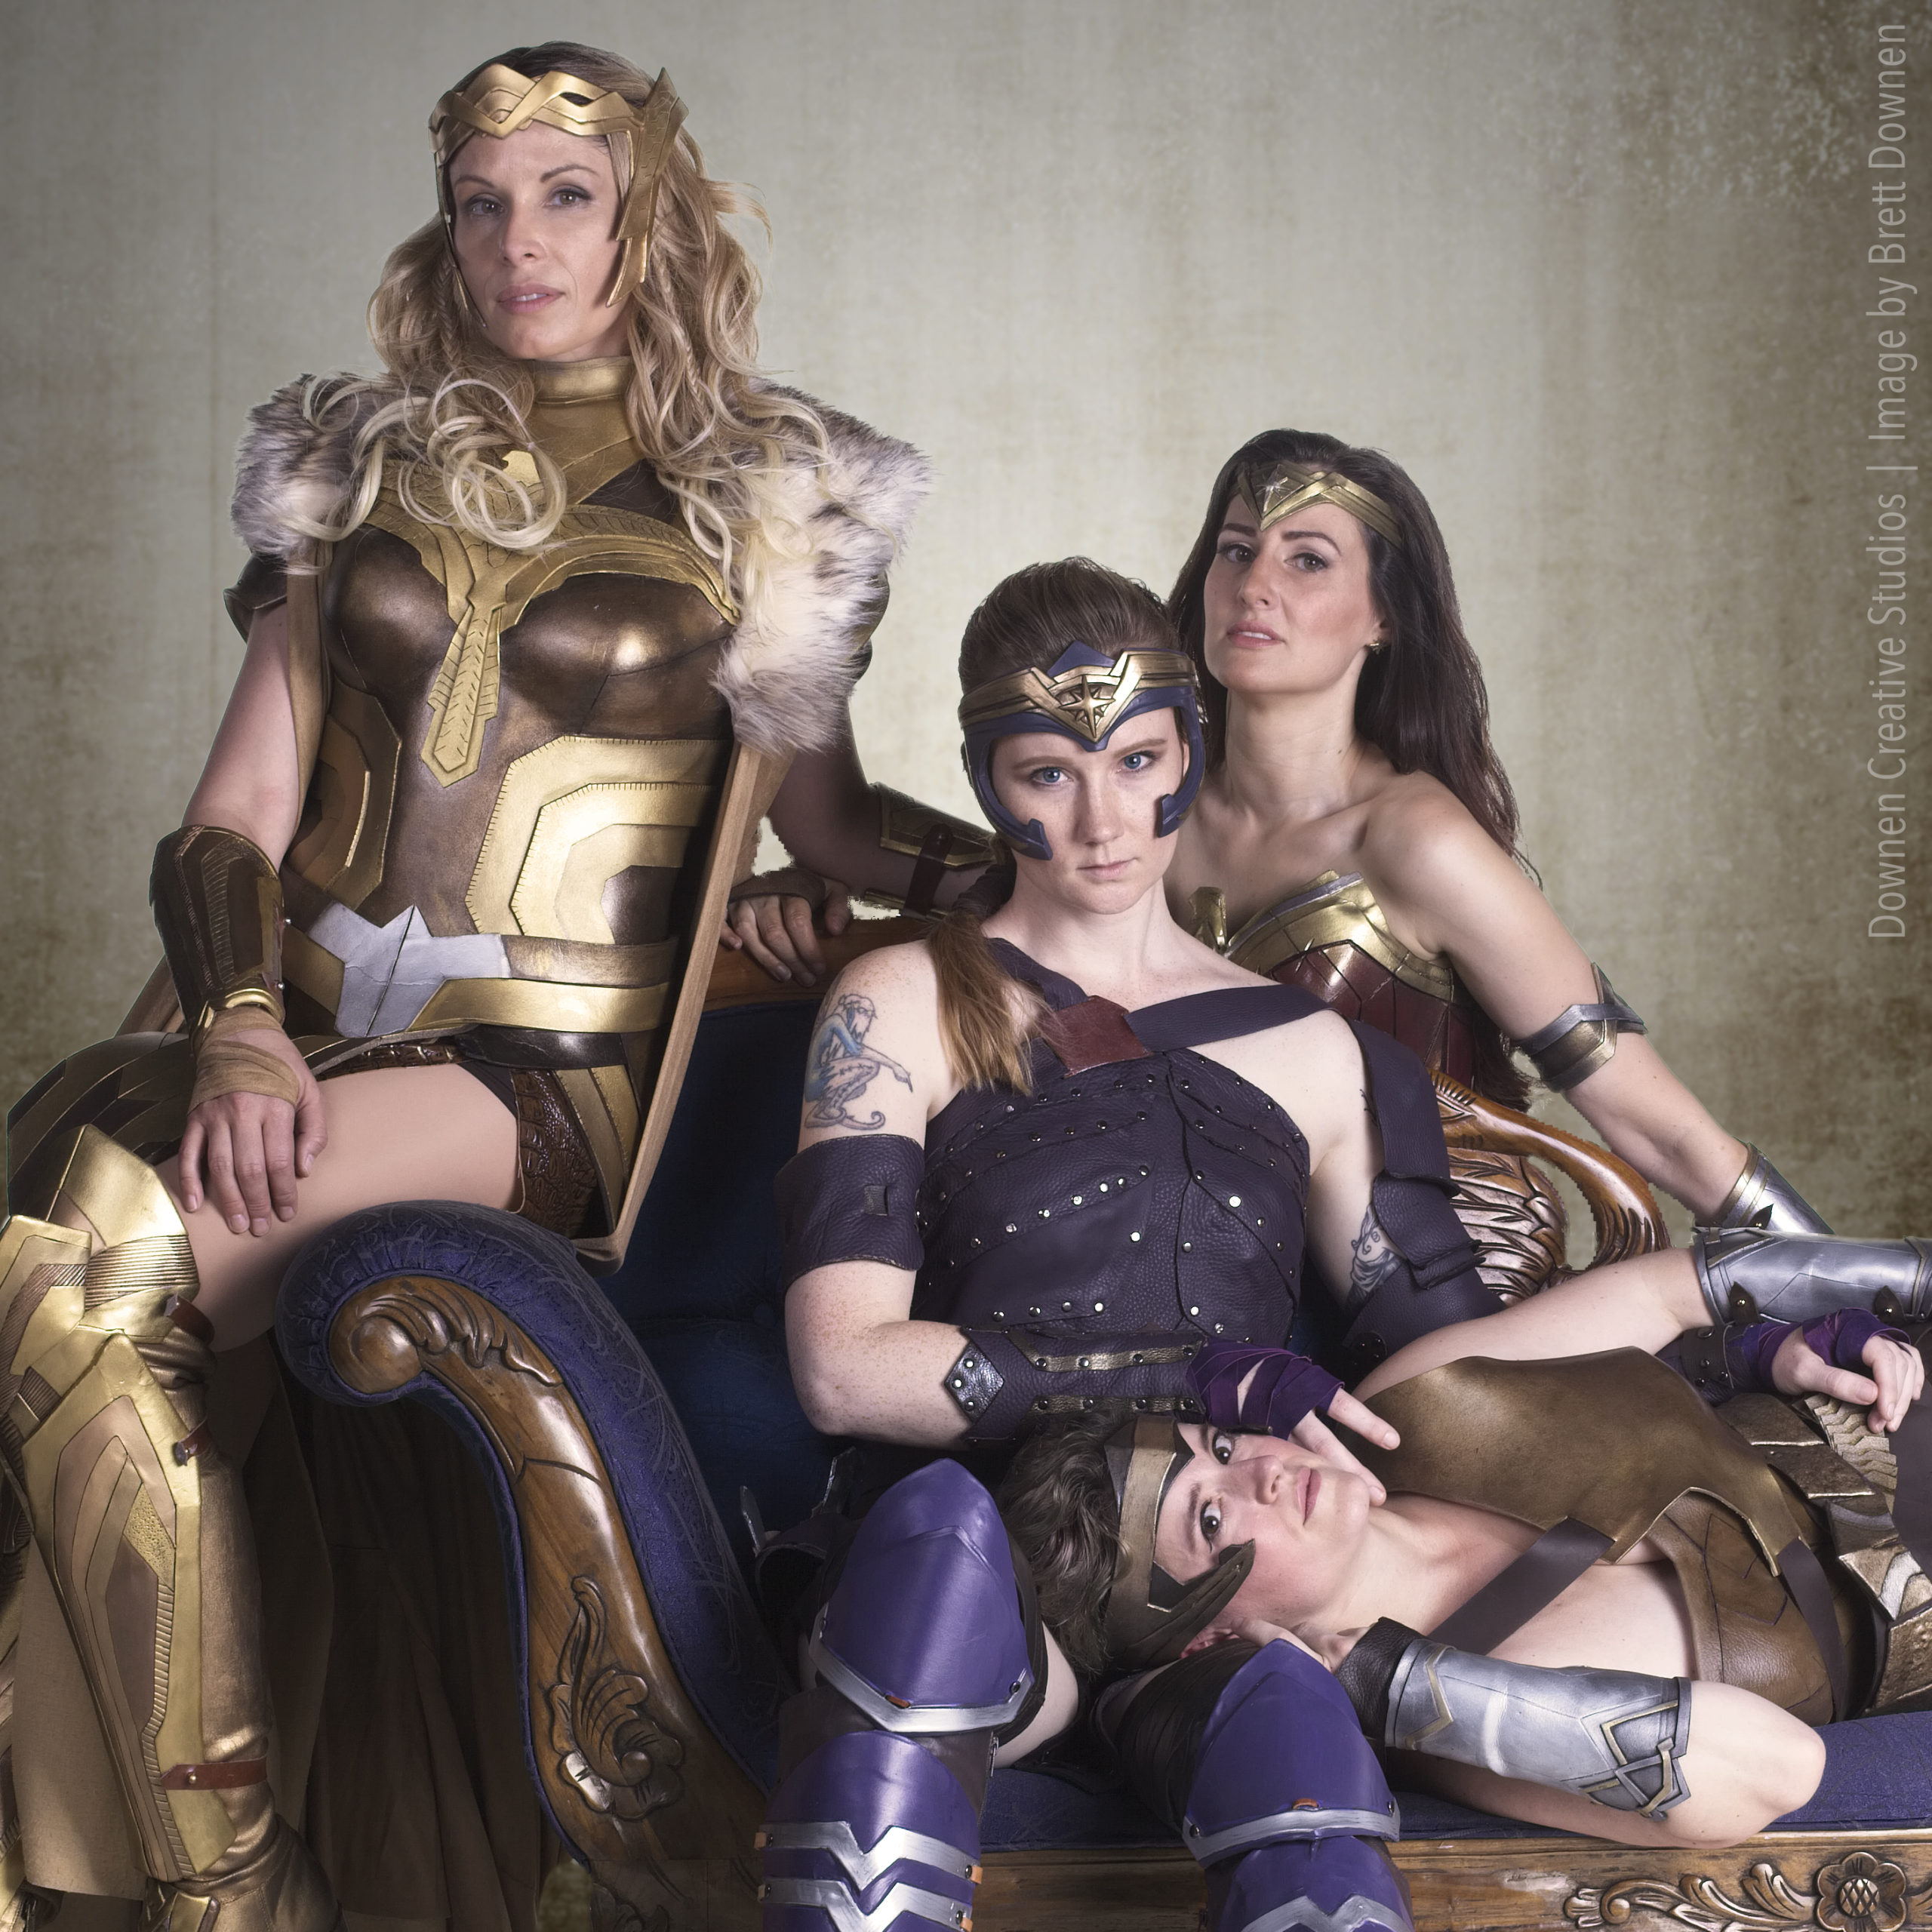 Cosplayers Create Their Own Wonder Woman Vanity Fair Shoot